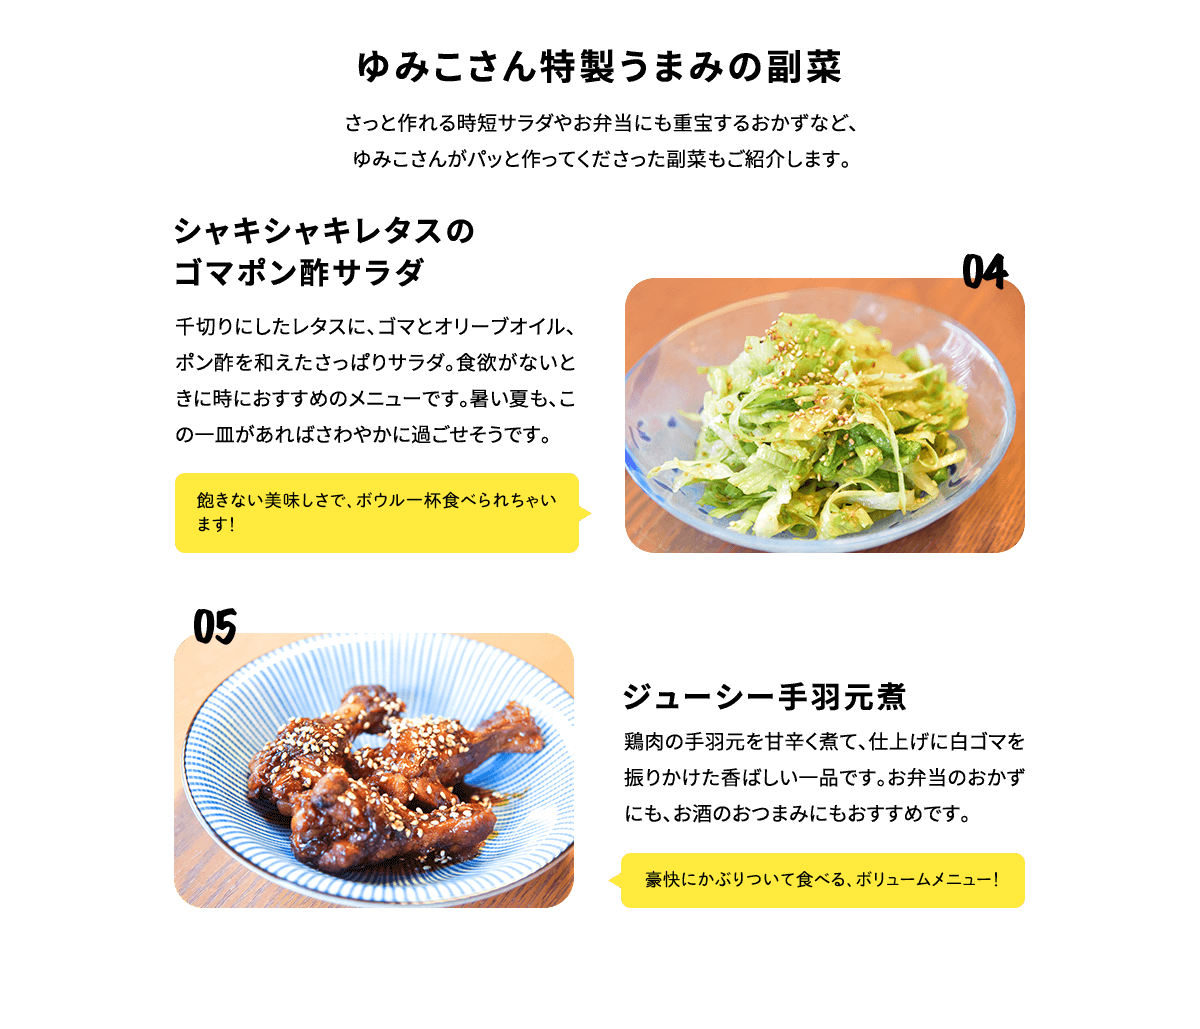 ゆみこさん特製うまみの副菜 04「シャキシャキレタスのゴマポン酢サラダ」05「ジューシー手羽元煮」